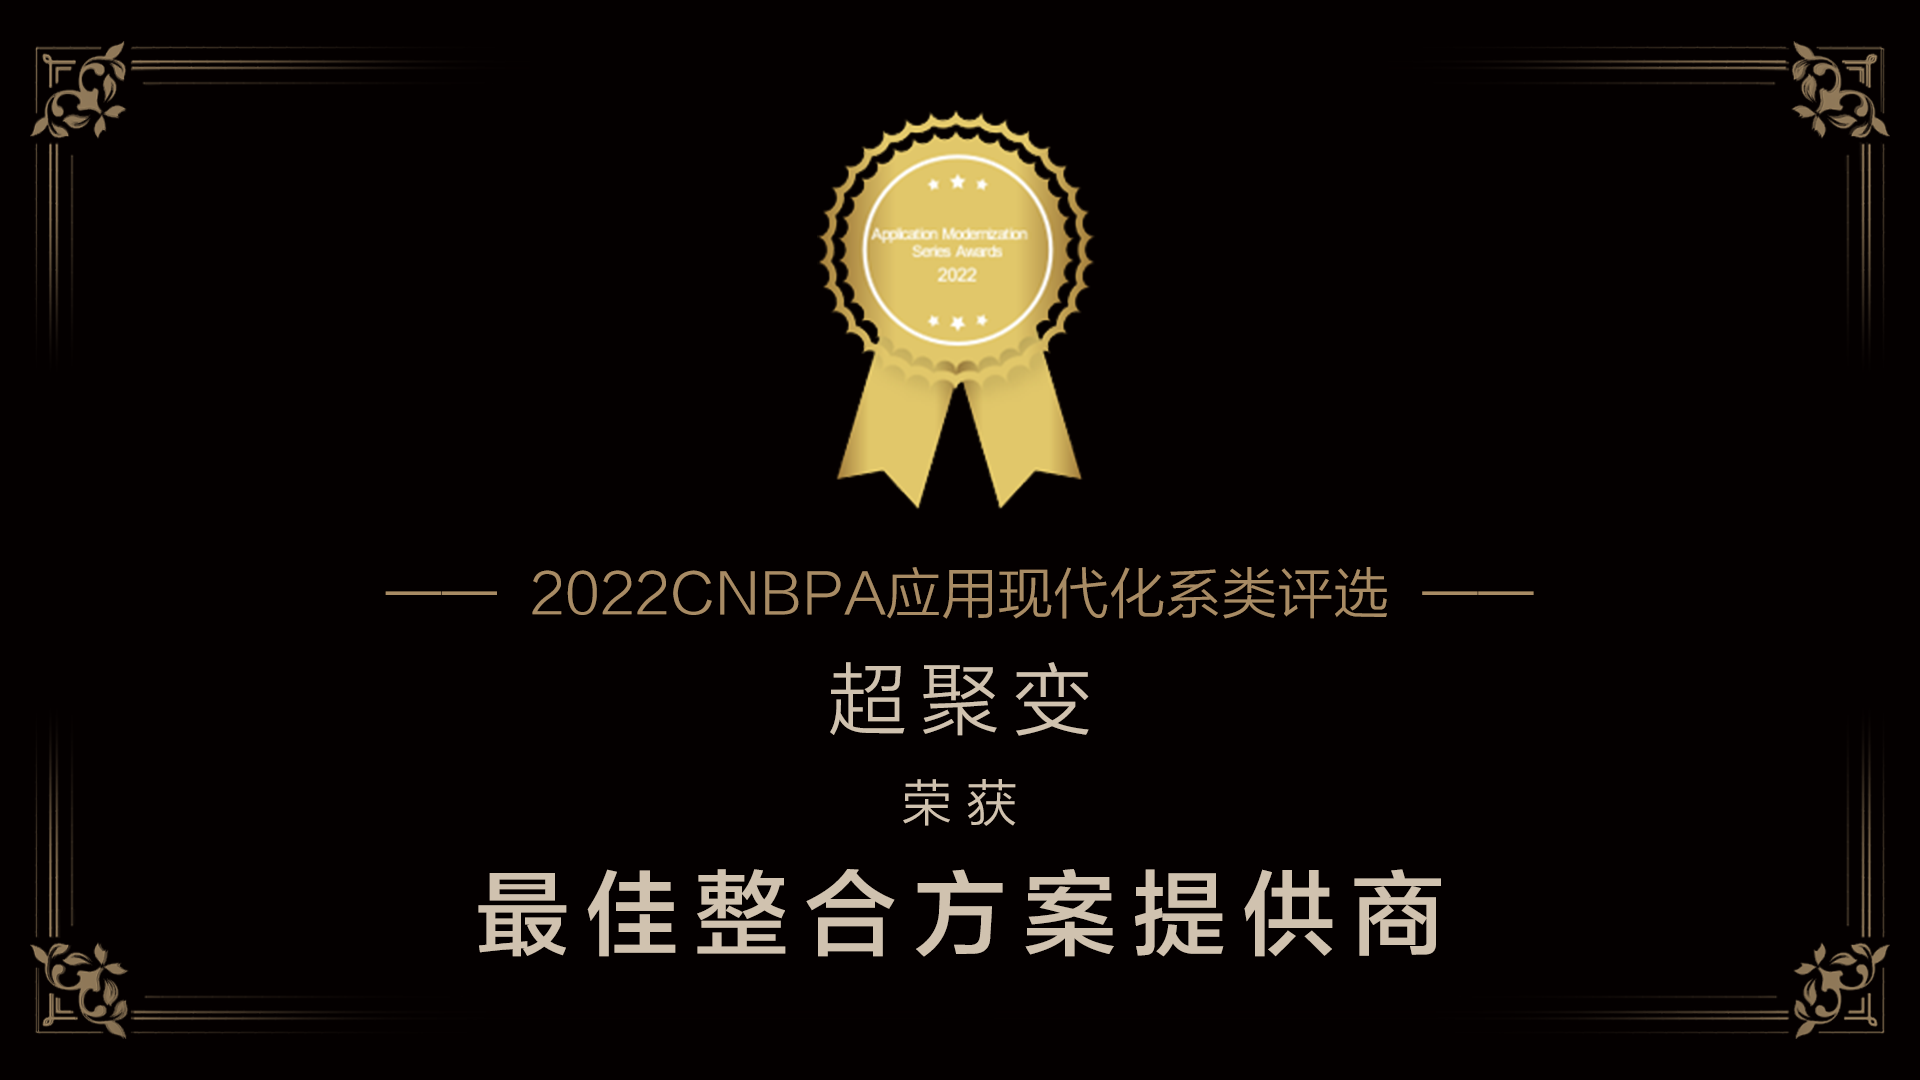 超聚变获评CNBPA“最佳整合方案提供商”